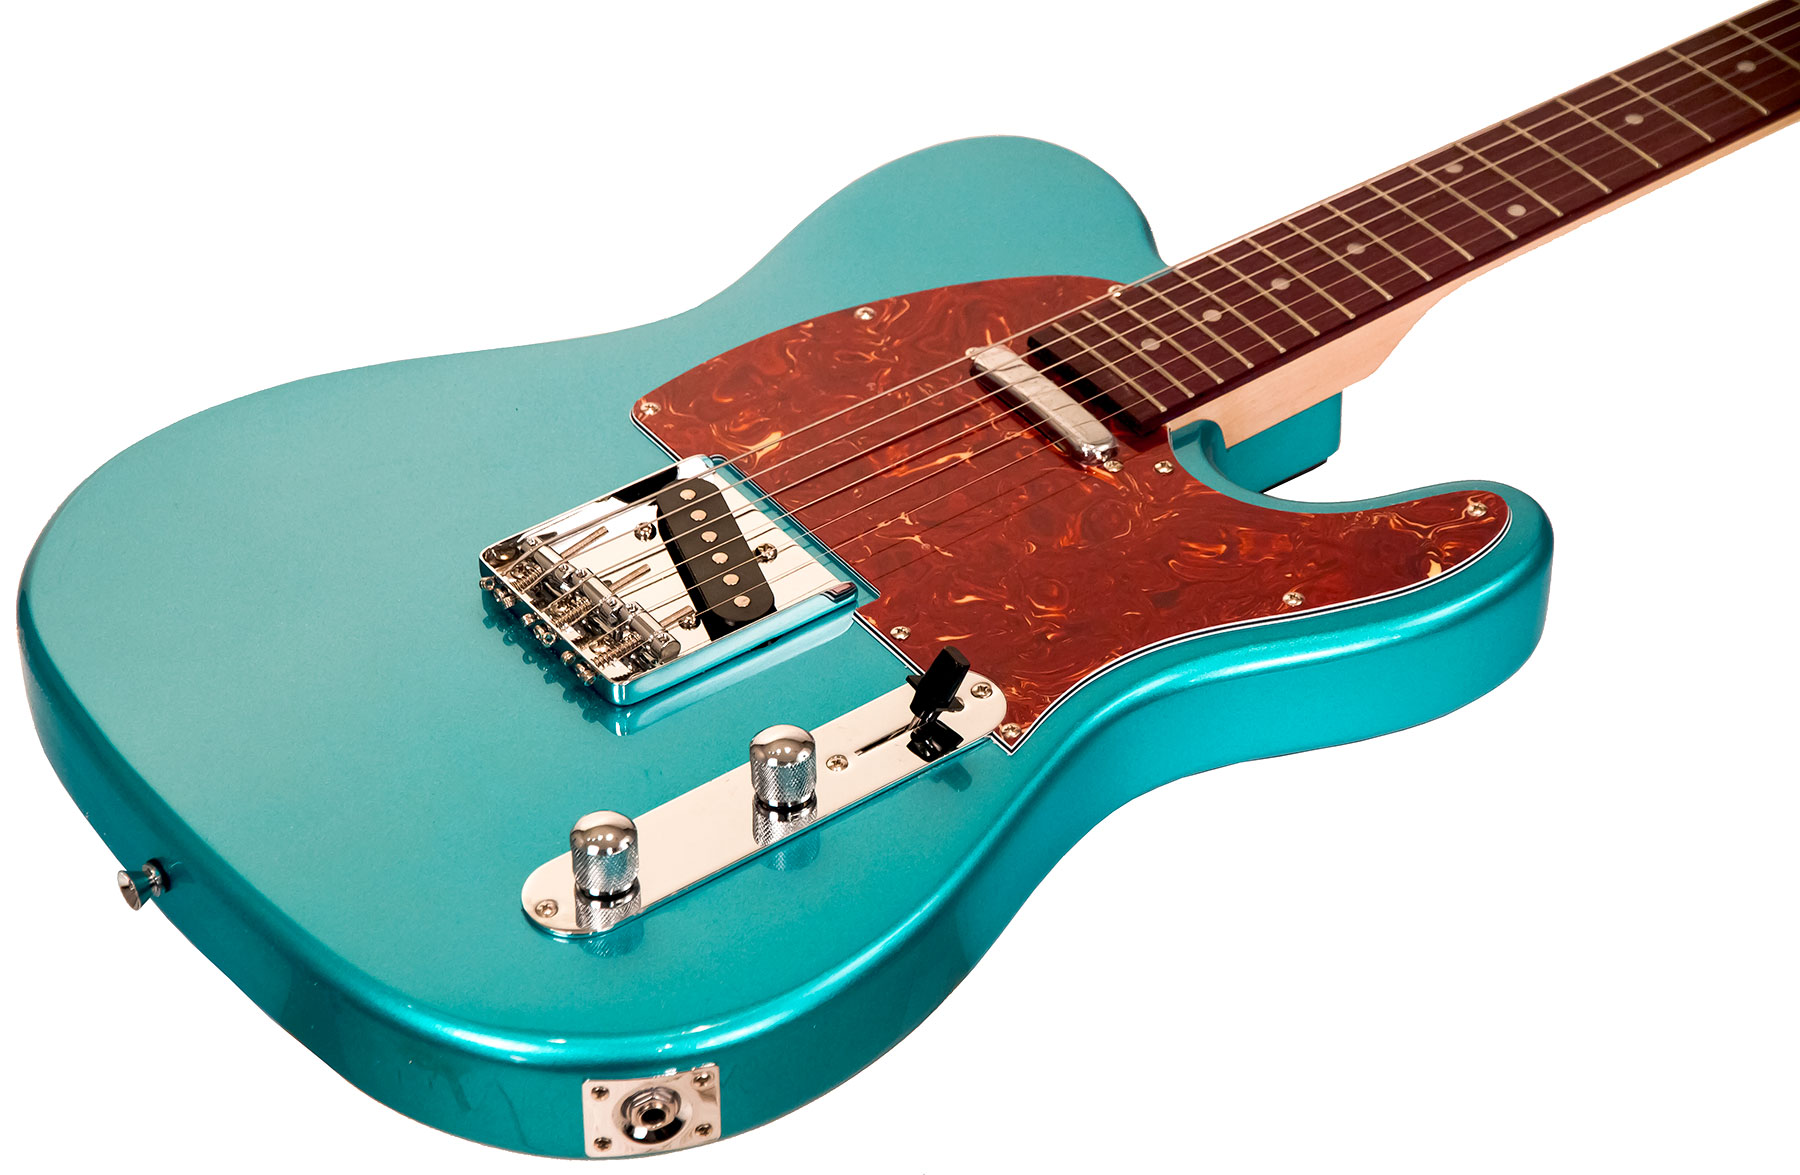 Eastone Tl70 Ss Ht Pur - Metallic Light Blue - Televorm elektrische gitaar - Variation 1